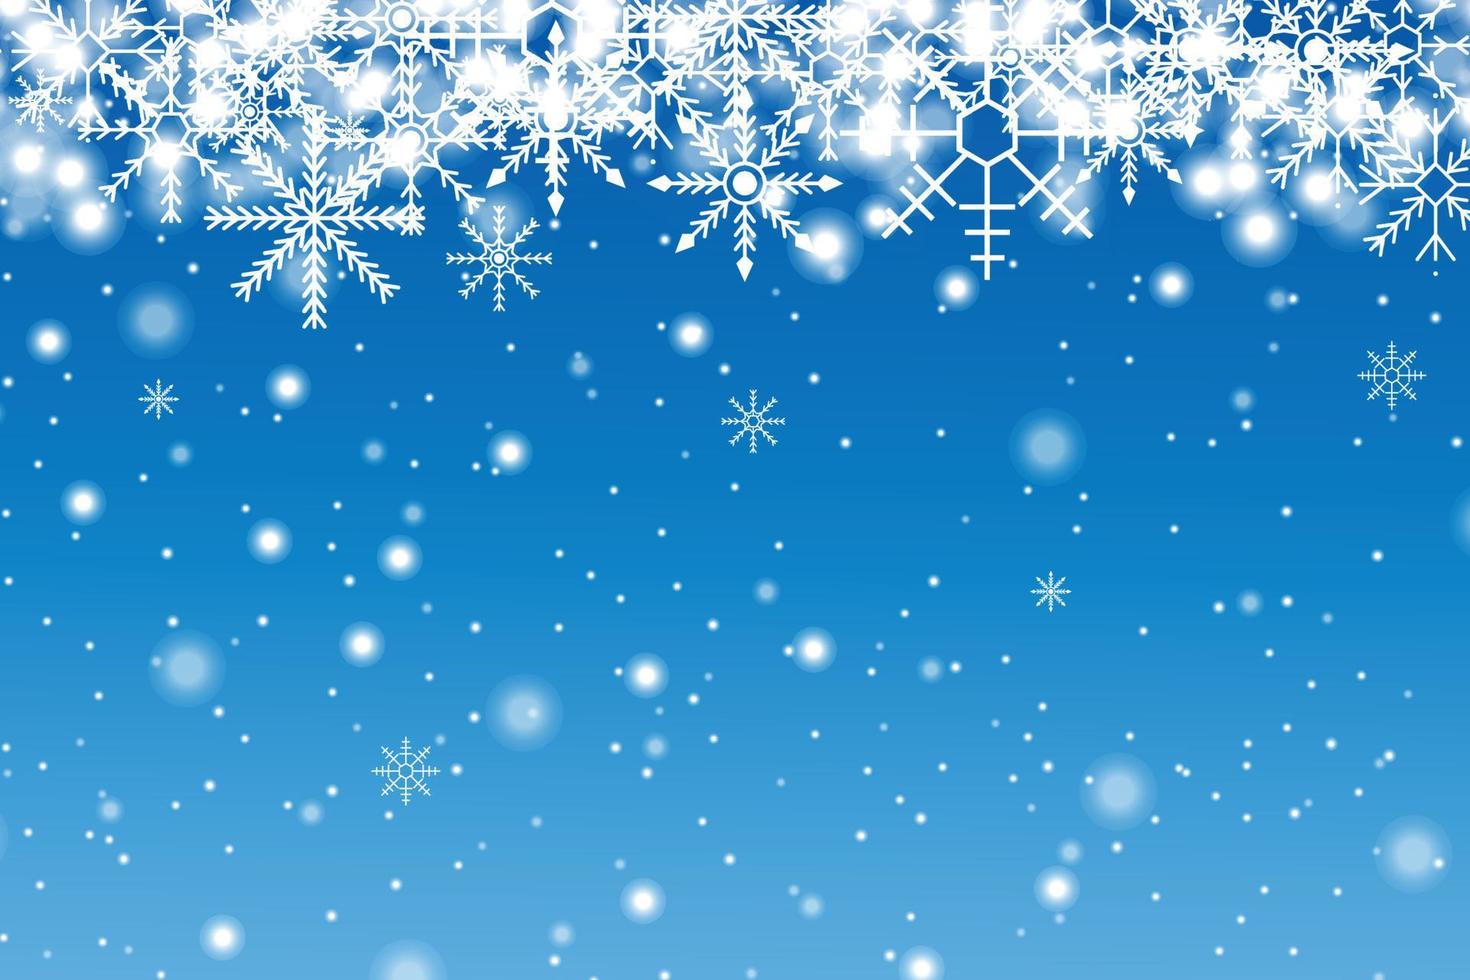 naturlig vinter- jul bakgrund med himmel, tung snöfall, snöflingor i annorlunda former och former, snödrivor. vinter- landskap med faller jul lysande skön snö. vektor